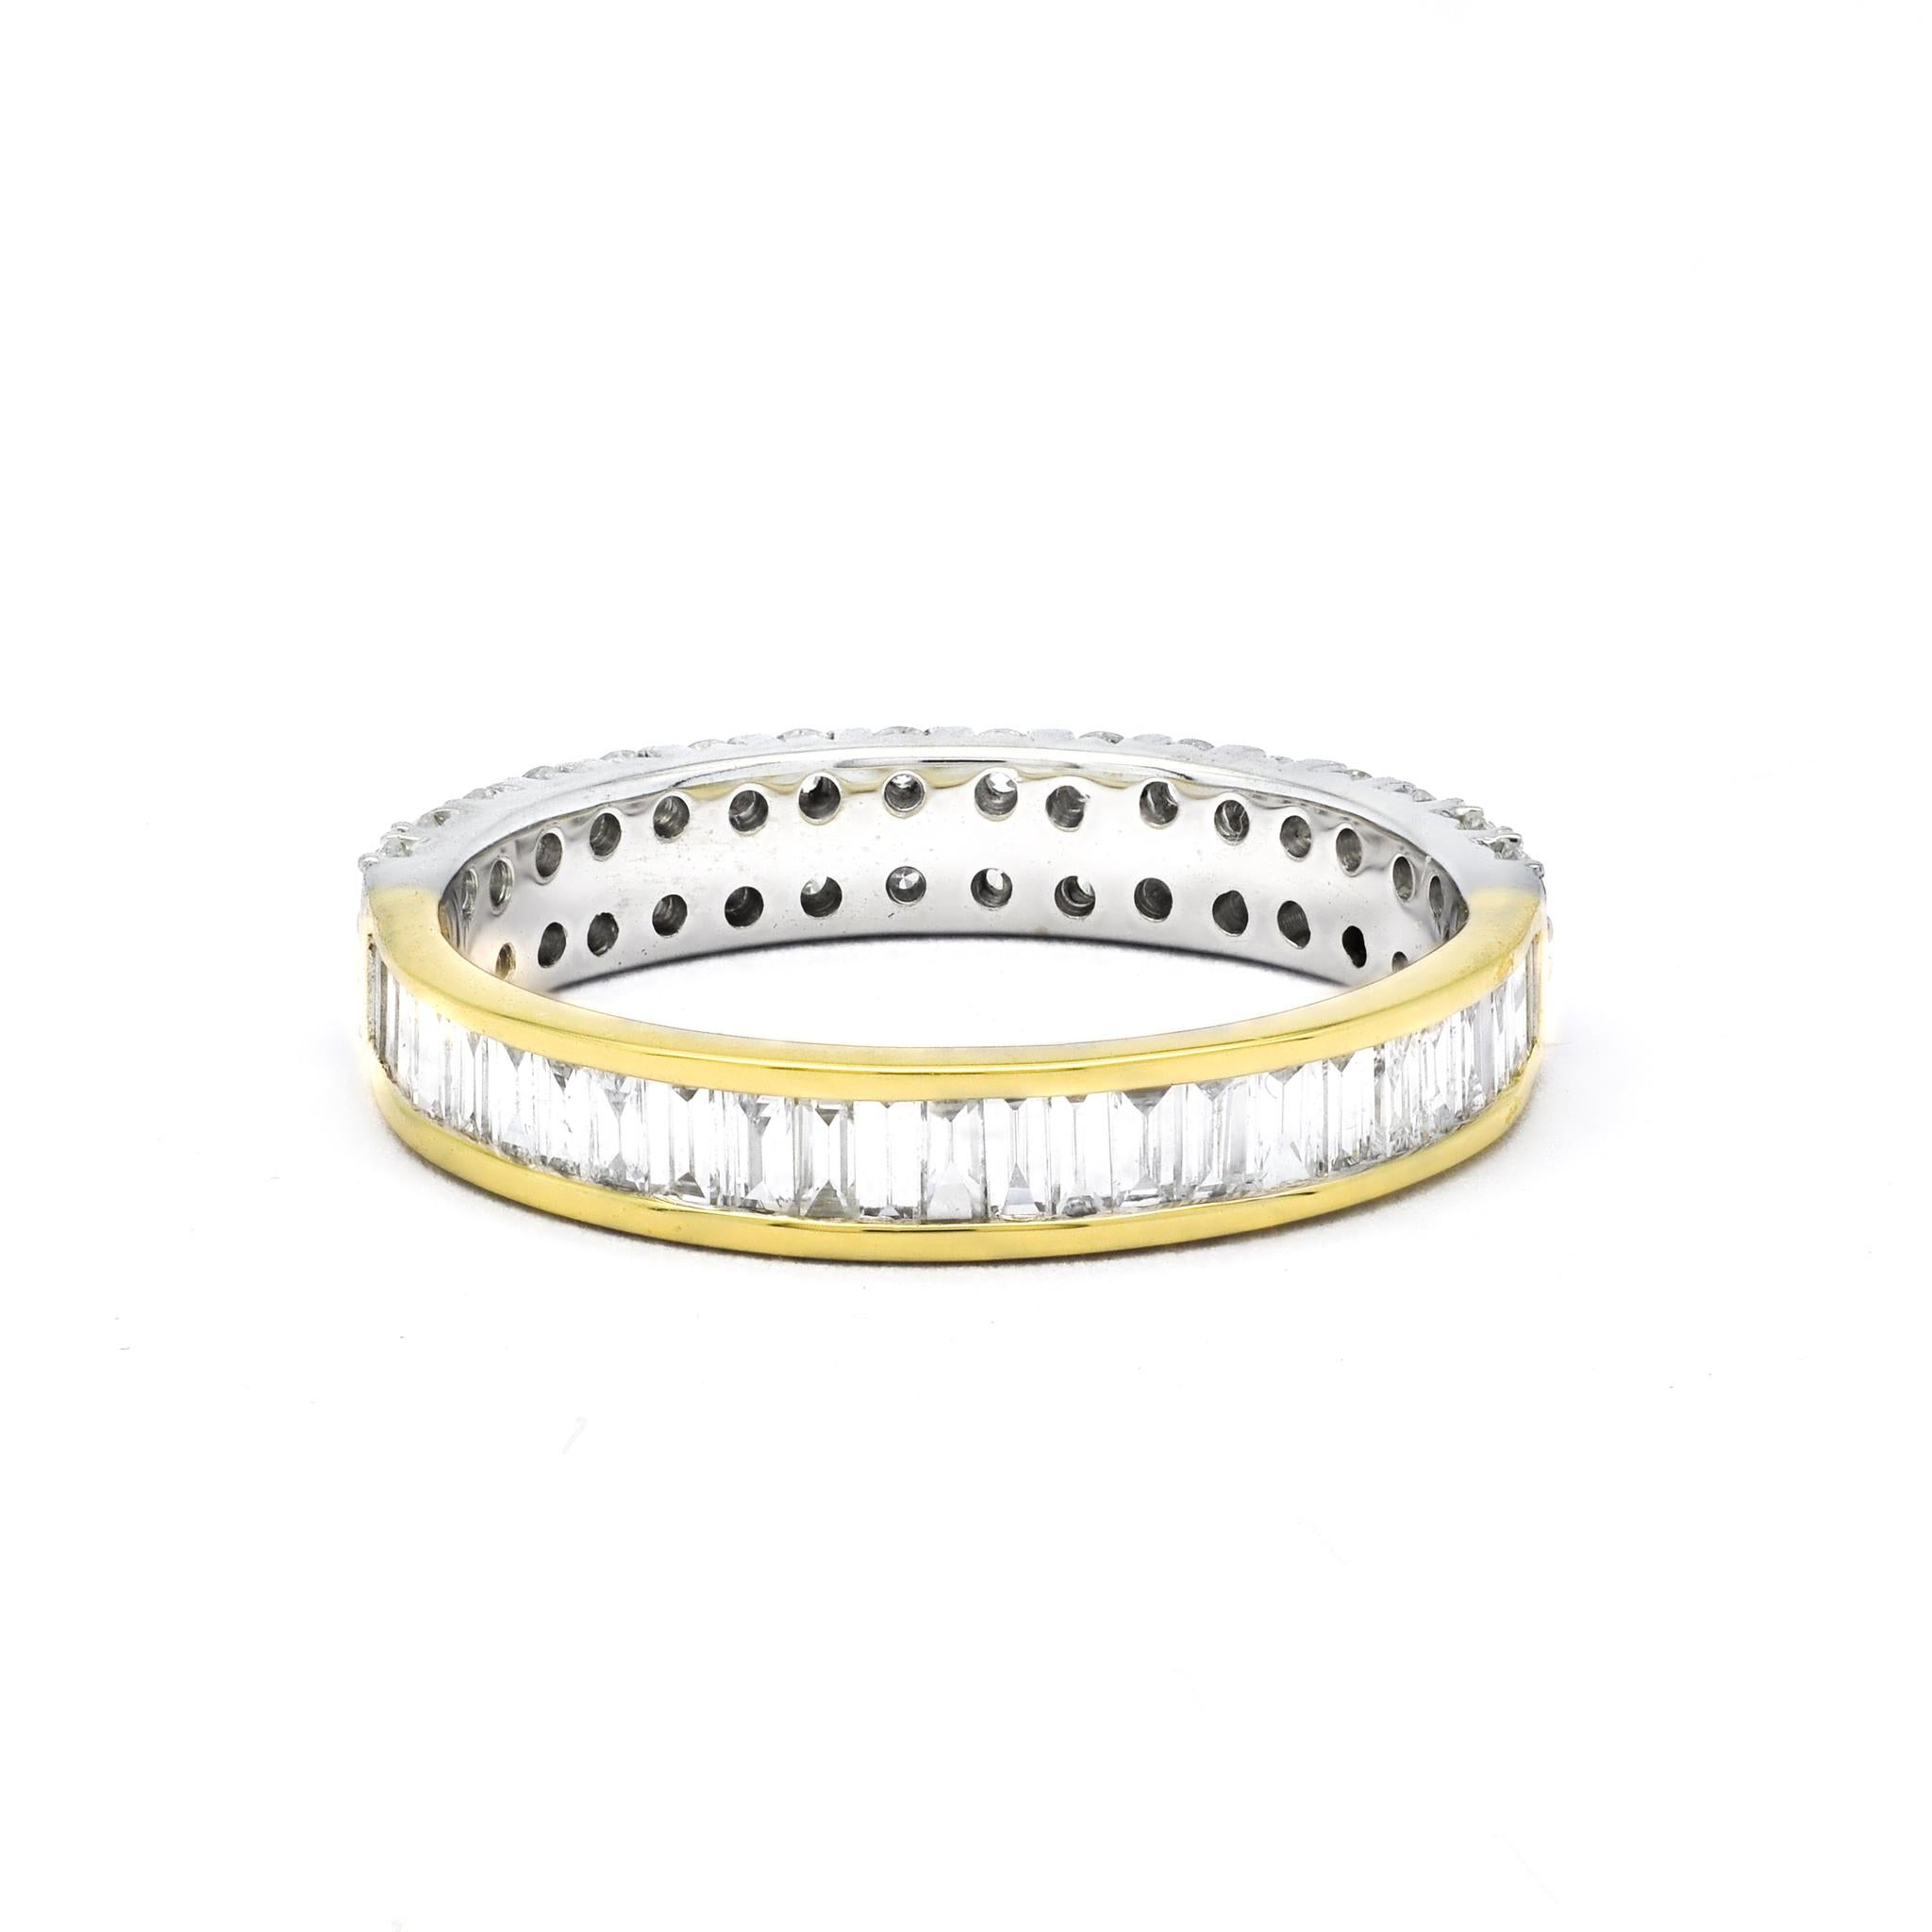 Unser exquisites Dual-Style-Diamantband ist eine strahlende Verschmelzung von Eleganz und Vielseitigkeit. Dieser aus 18 Karat Weiß- und Gelbgold gefertigte Designer-Ehering strahlt Raffinesse und Charme aus und ist dazu bestimmt, Ihre besonderen